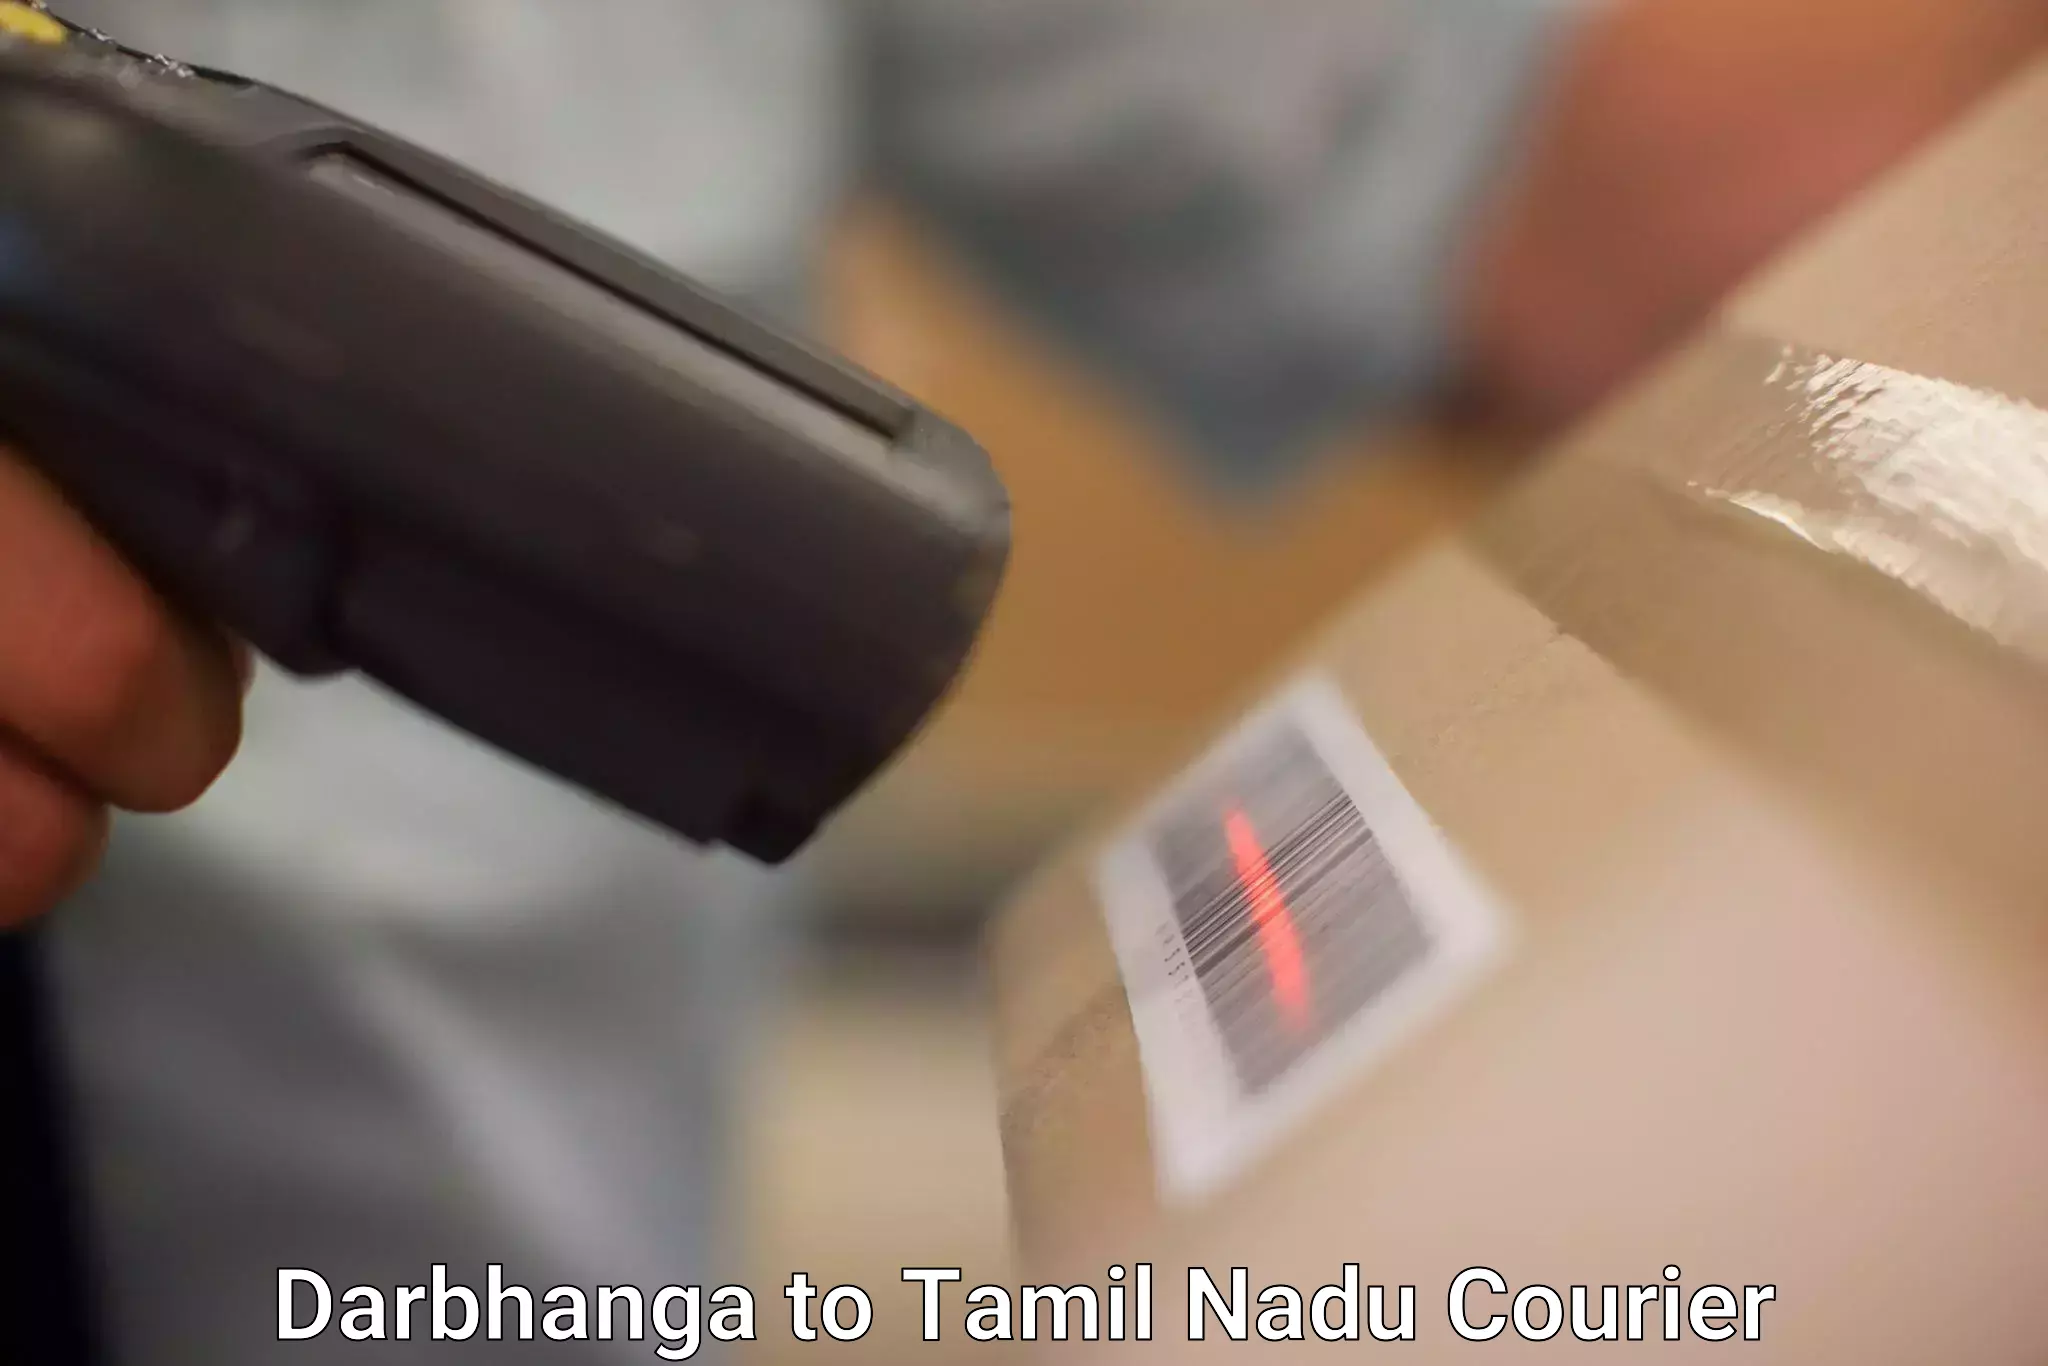 24/7 courier service Darbhanga to Ambasamudram